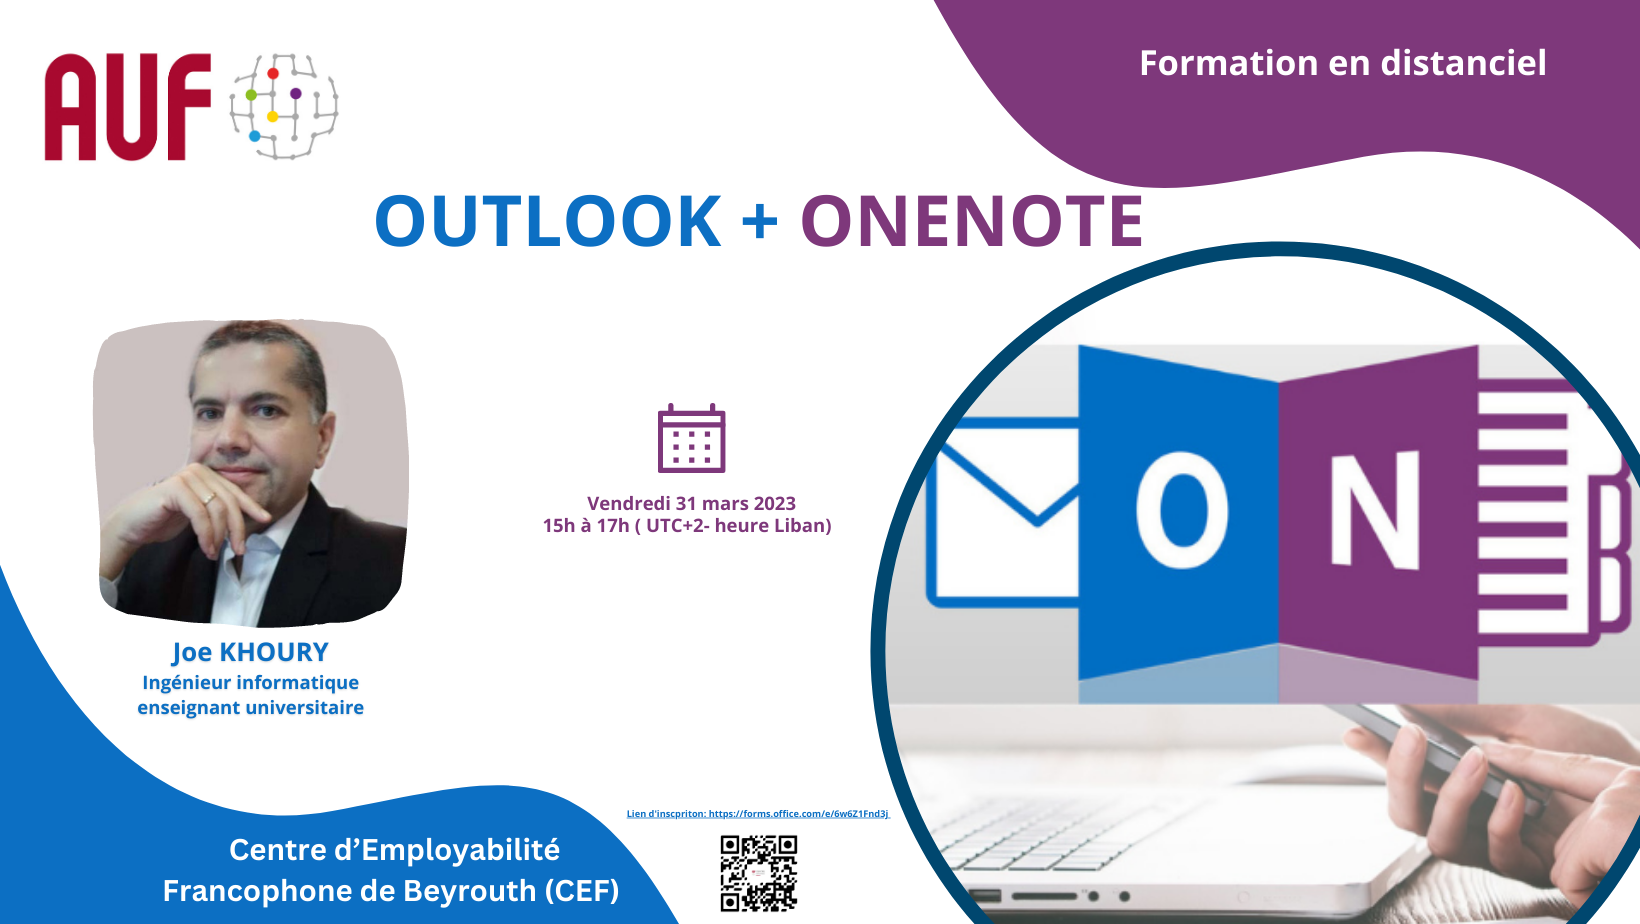 Visuel- Outlook + One note